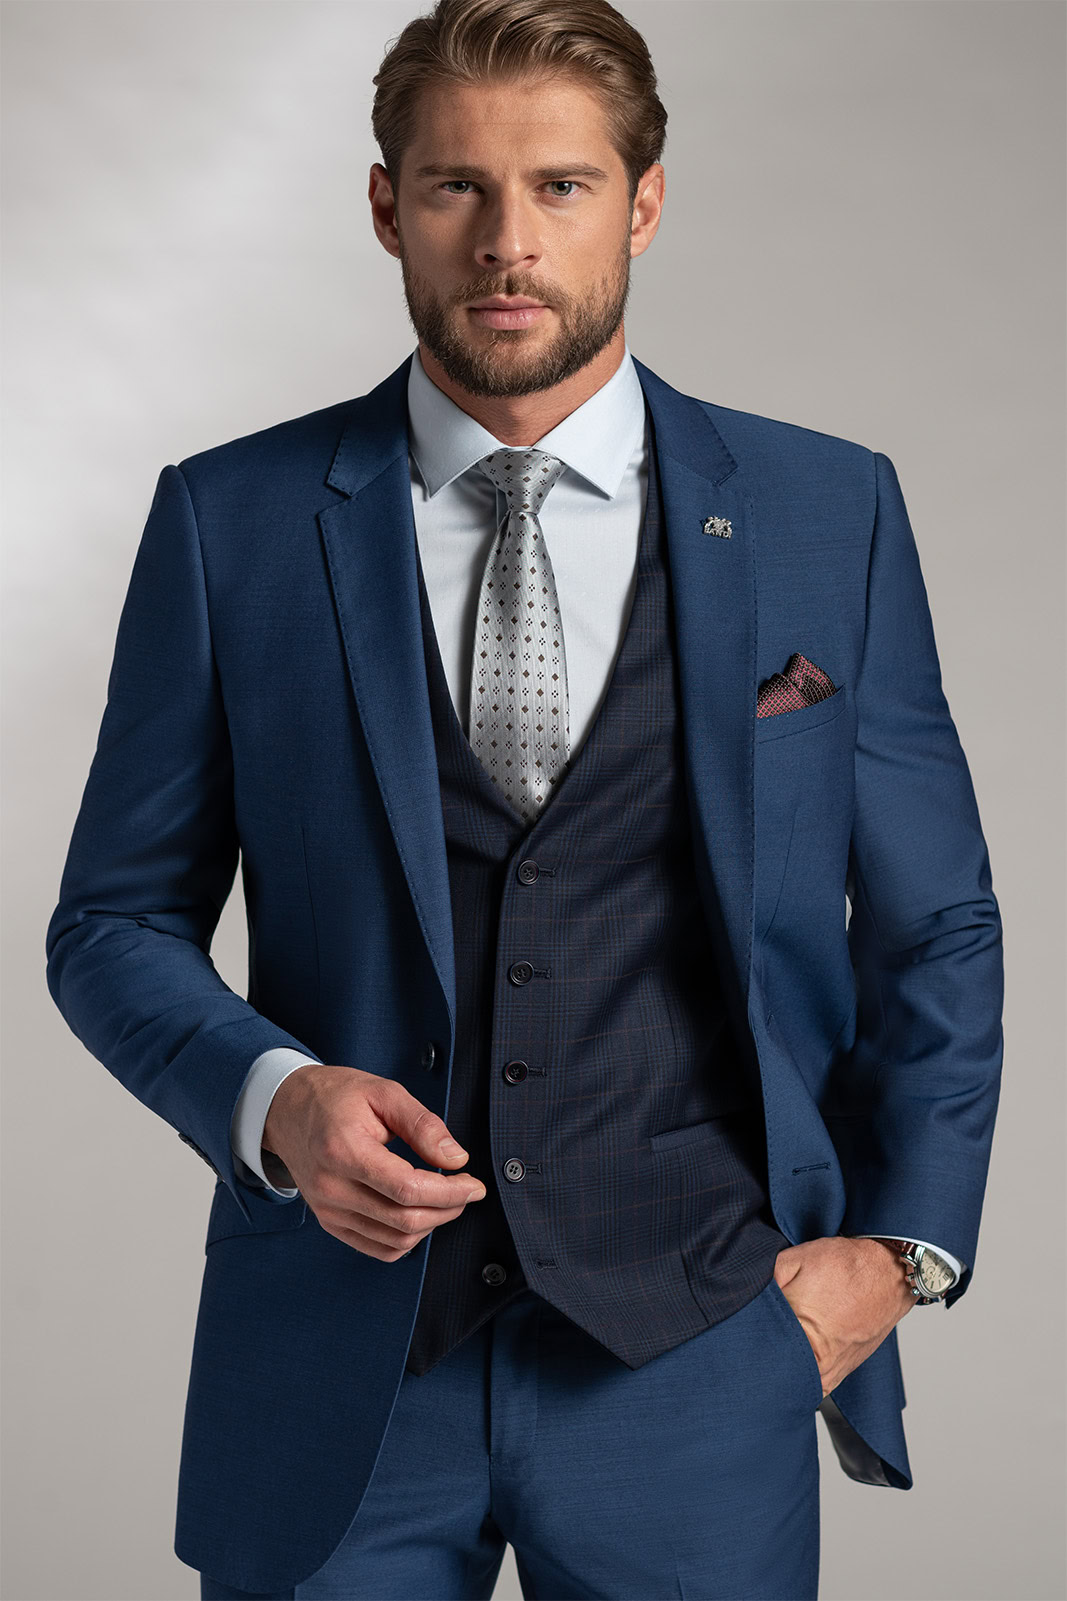 Pánský oblek BANDI Boscetti Blu, Tailored Fit